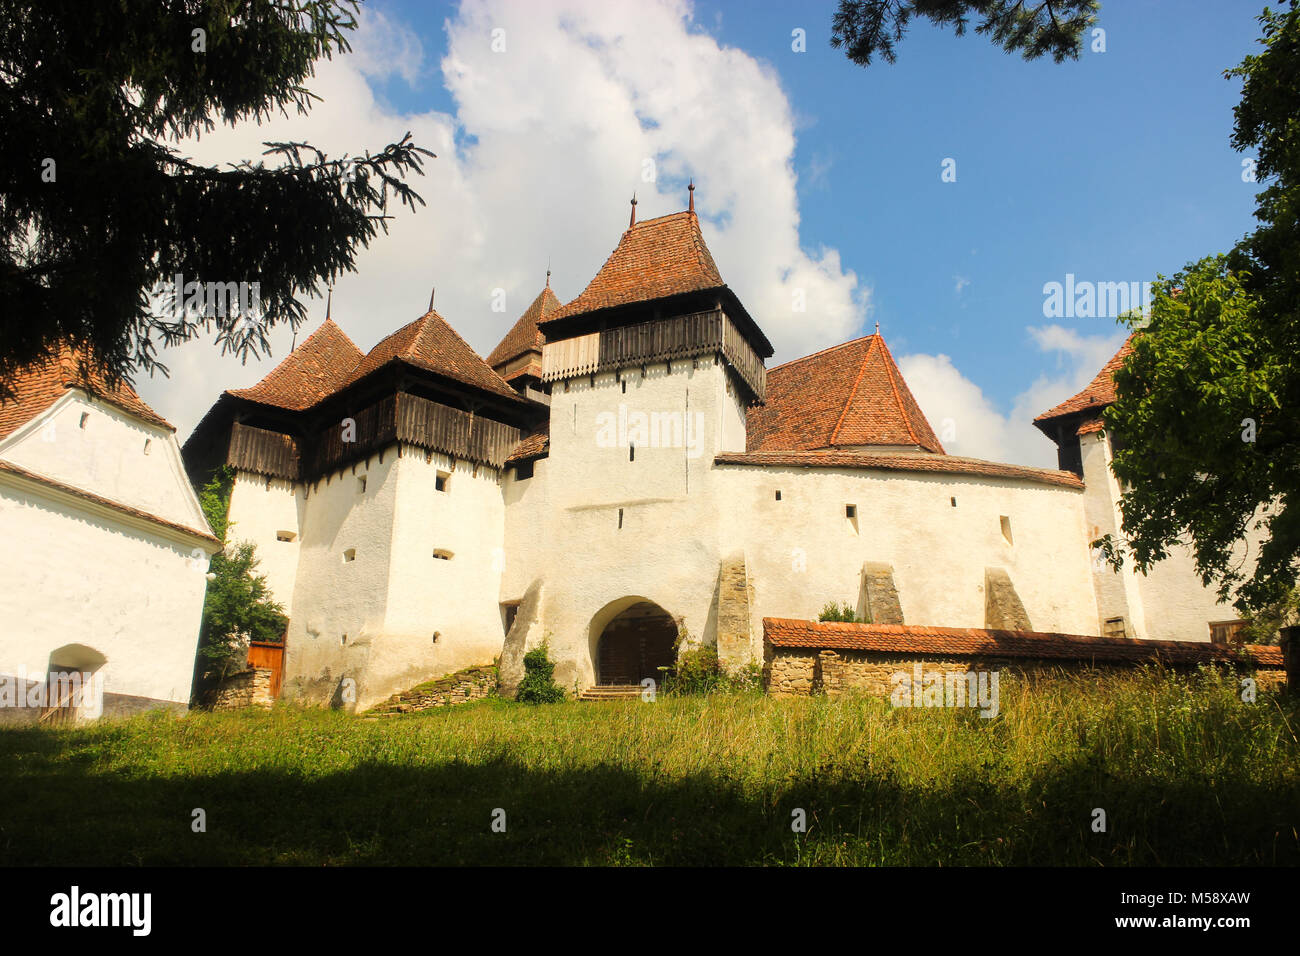 La magnifique église fortifiée du village Saxon de Viscri dans le sud de la Transylvanie, Roumanie. Banque D'Images